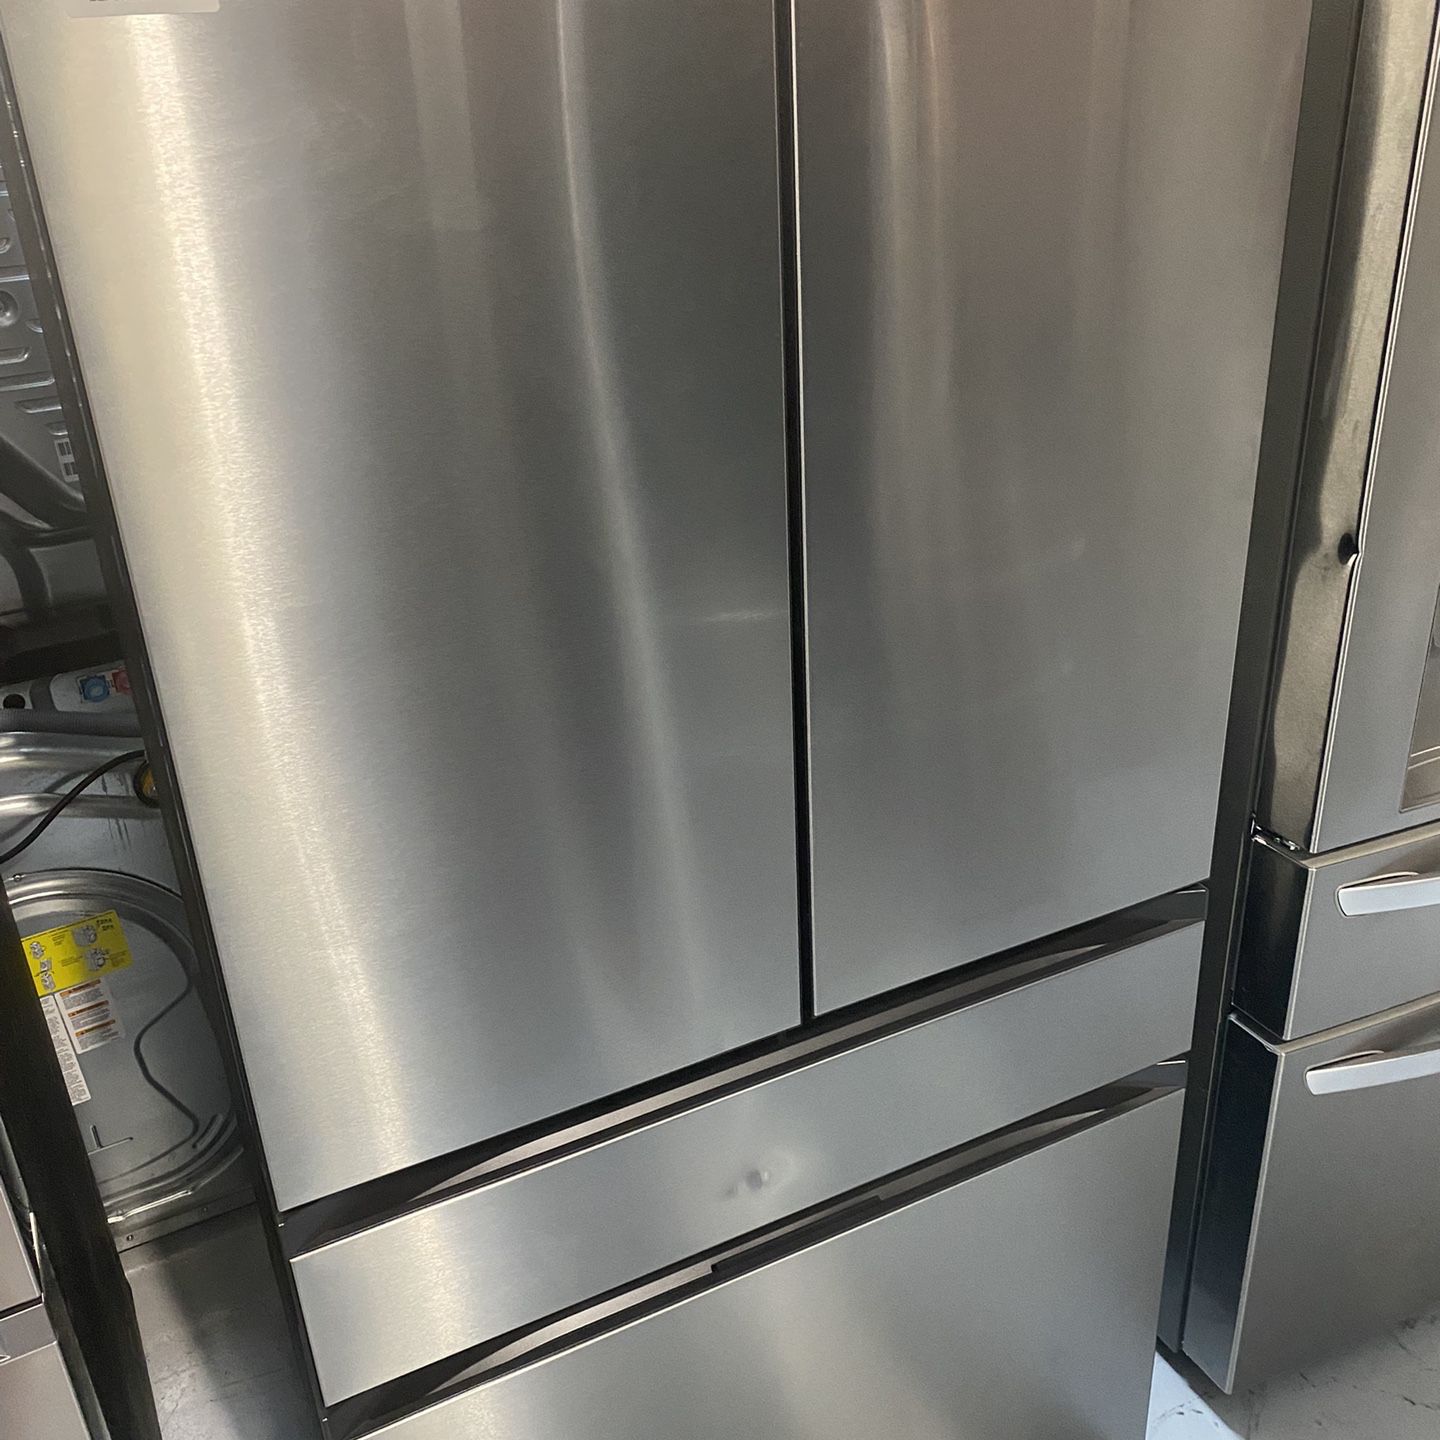 Samsung Stainless Steel Bespoke 4-Door French Door Refrigerator